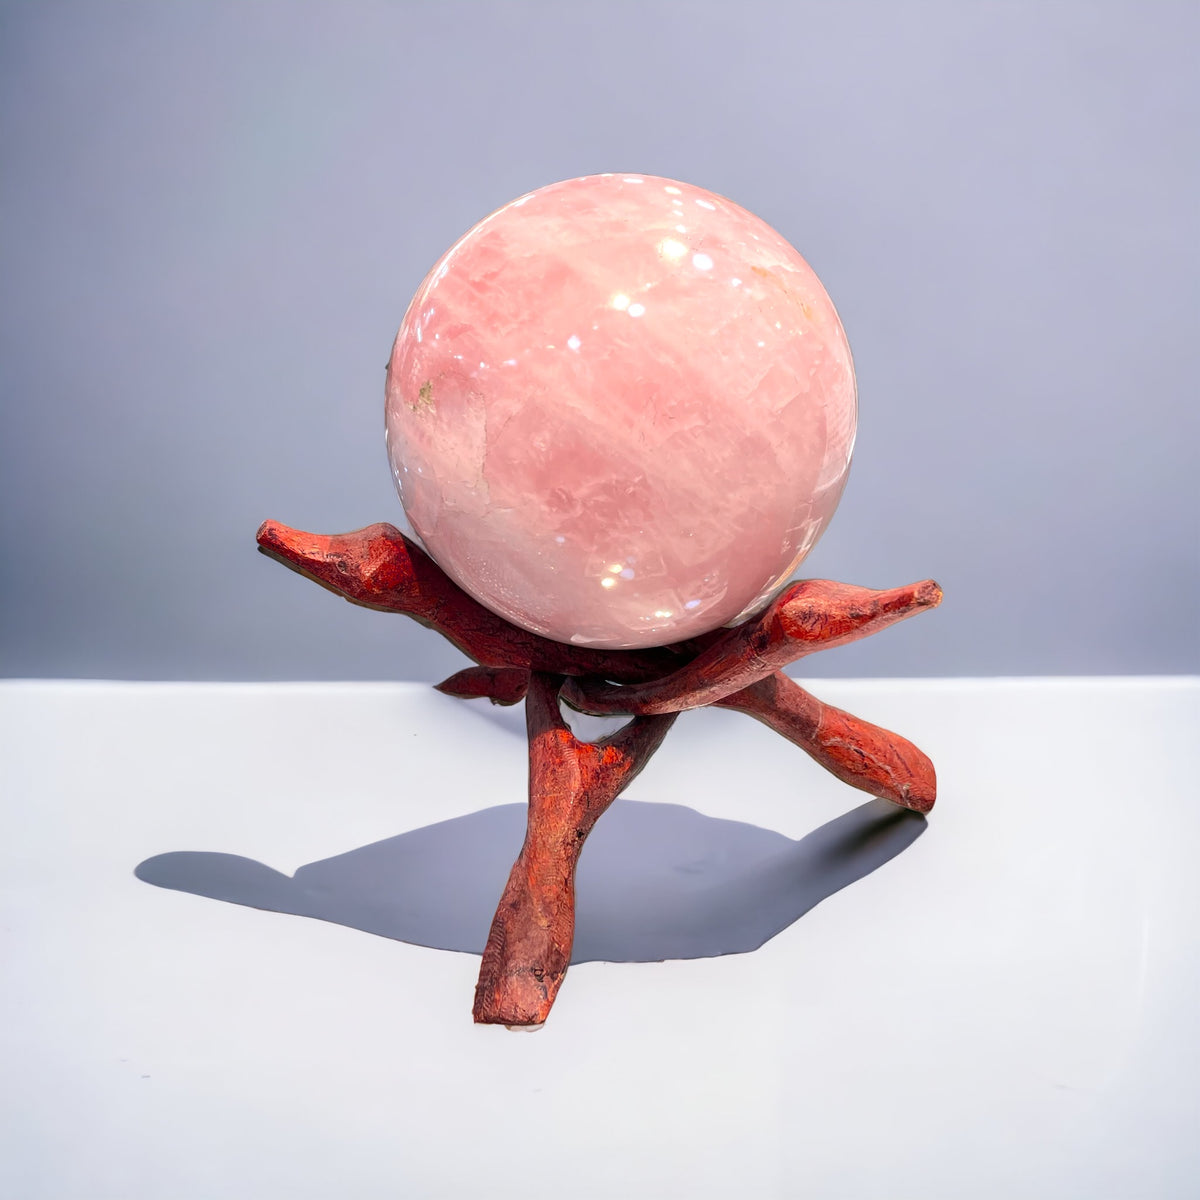 Rose Quartz Sphere 2710 Grams